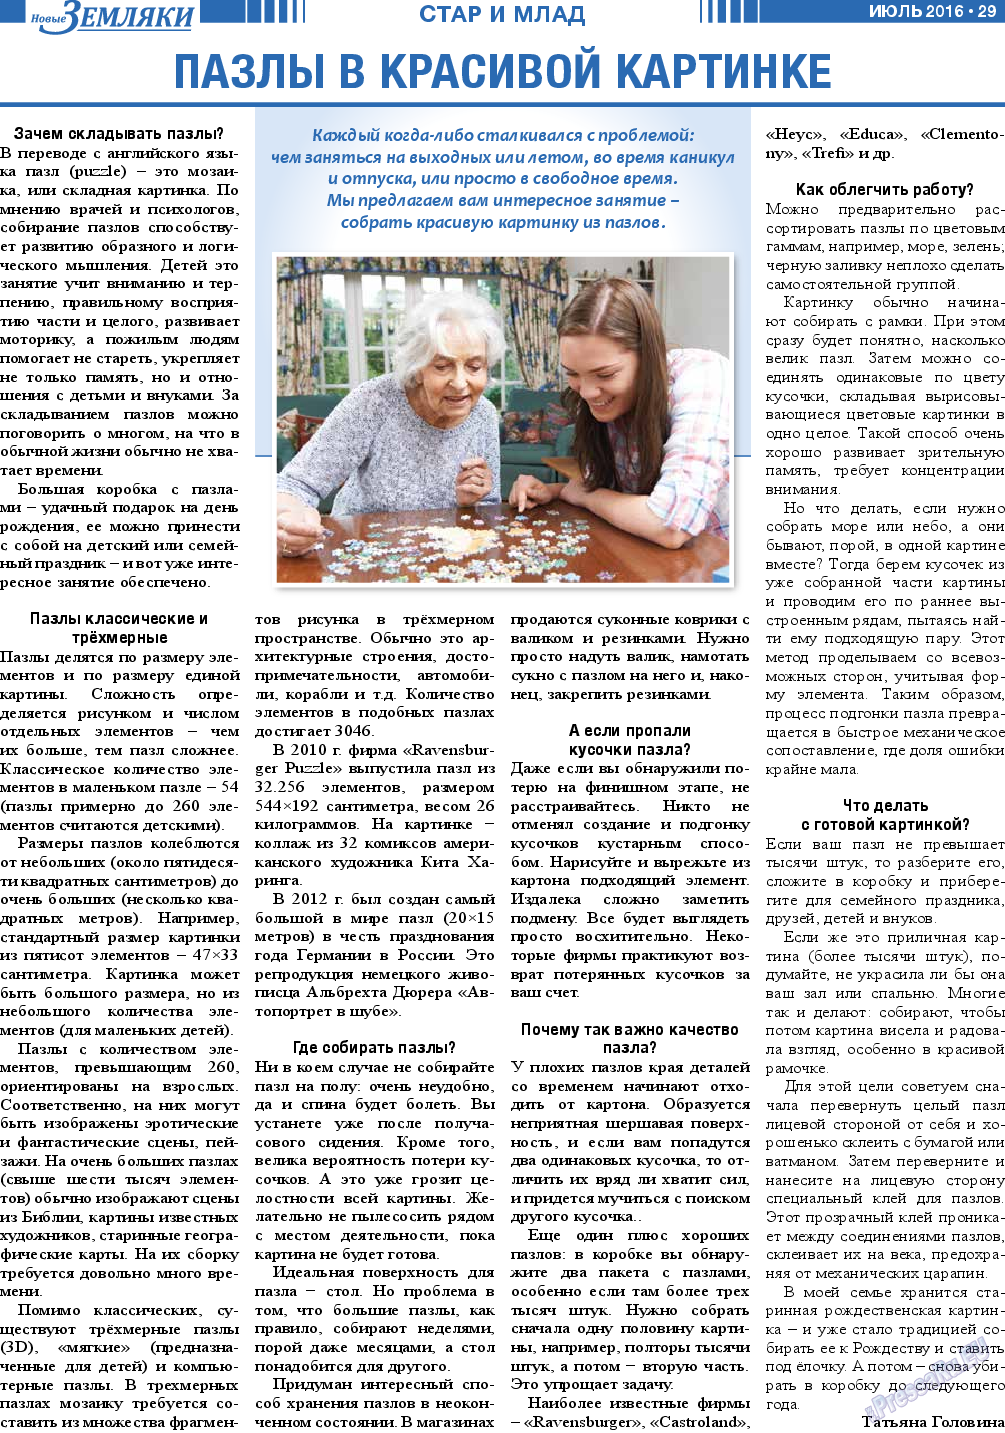 Новые Земляки, газета. 2016 №7 стр.29